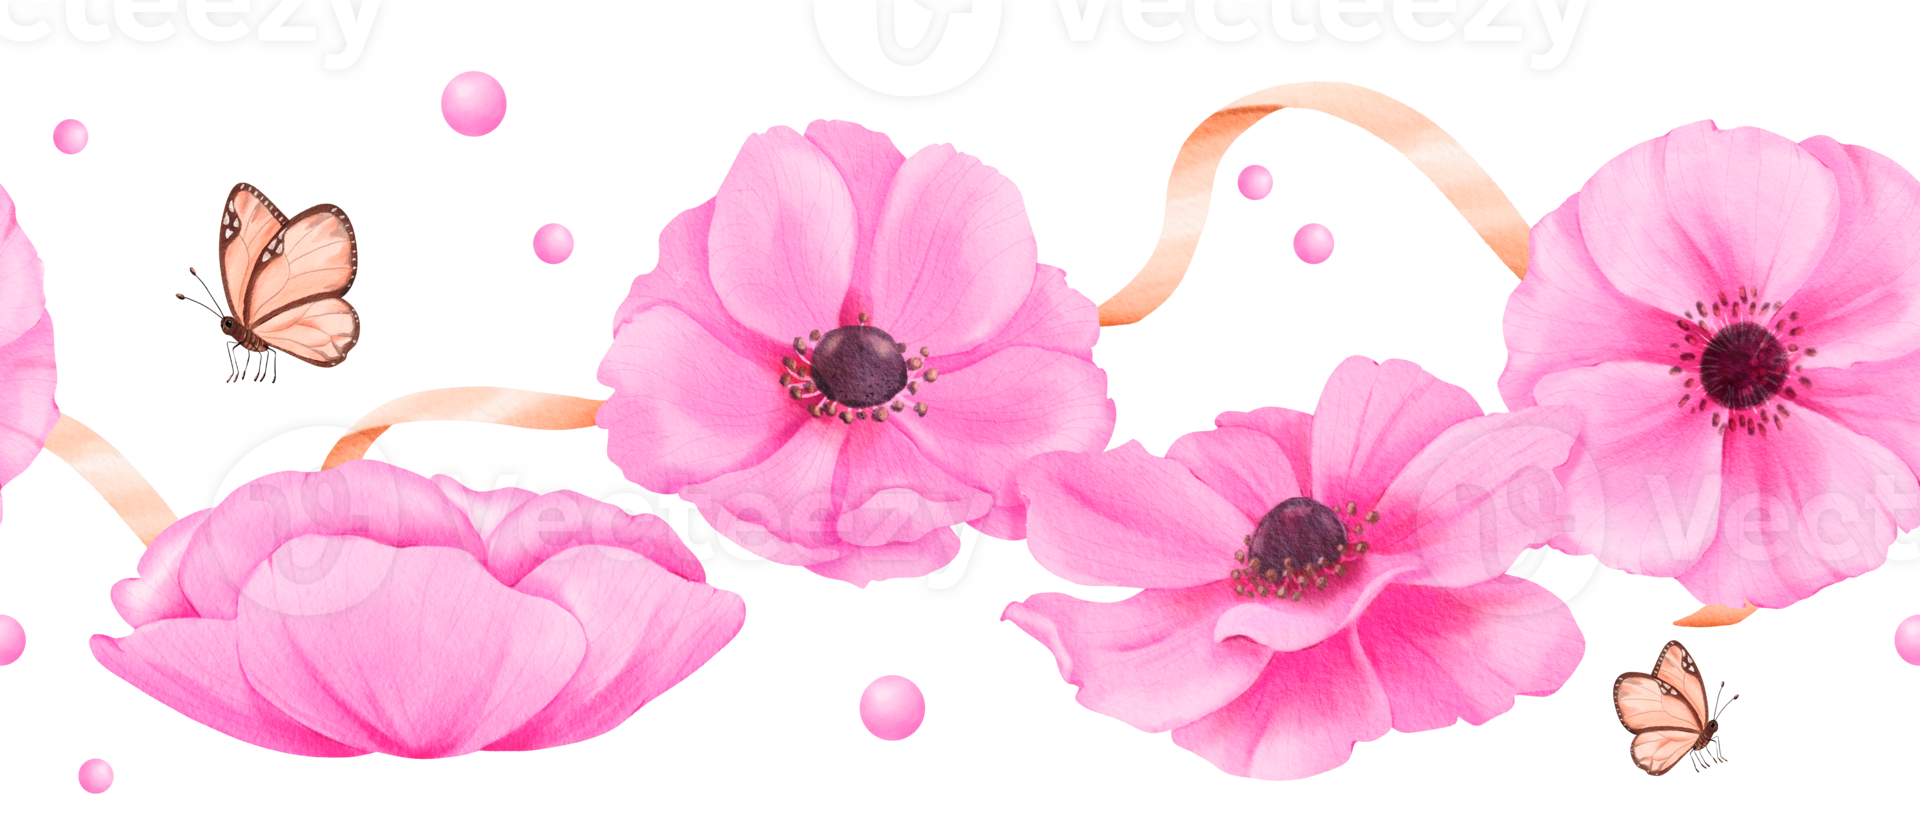 een naadloos grens met delicaat roze anemonen, versierd met linten, strass steentjes, en vlinders. waterverf illustratie voor scrapbooking digitaal achtergronden website banners of sociaal media png